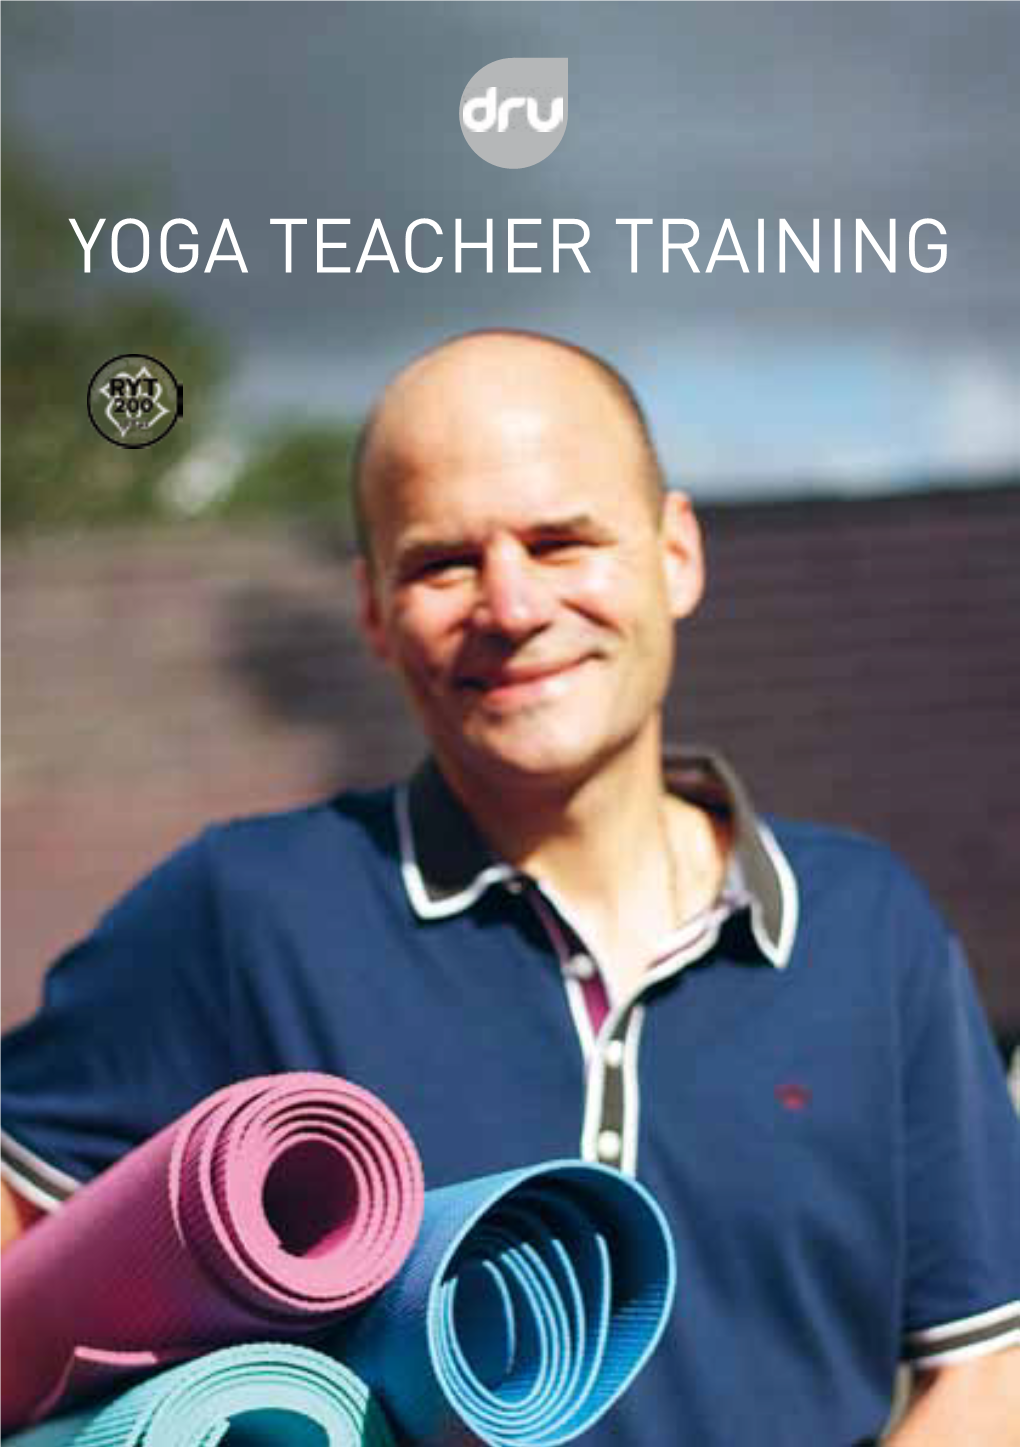 Yoga Teacher Training 2 About Dru Yoga